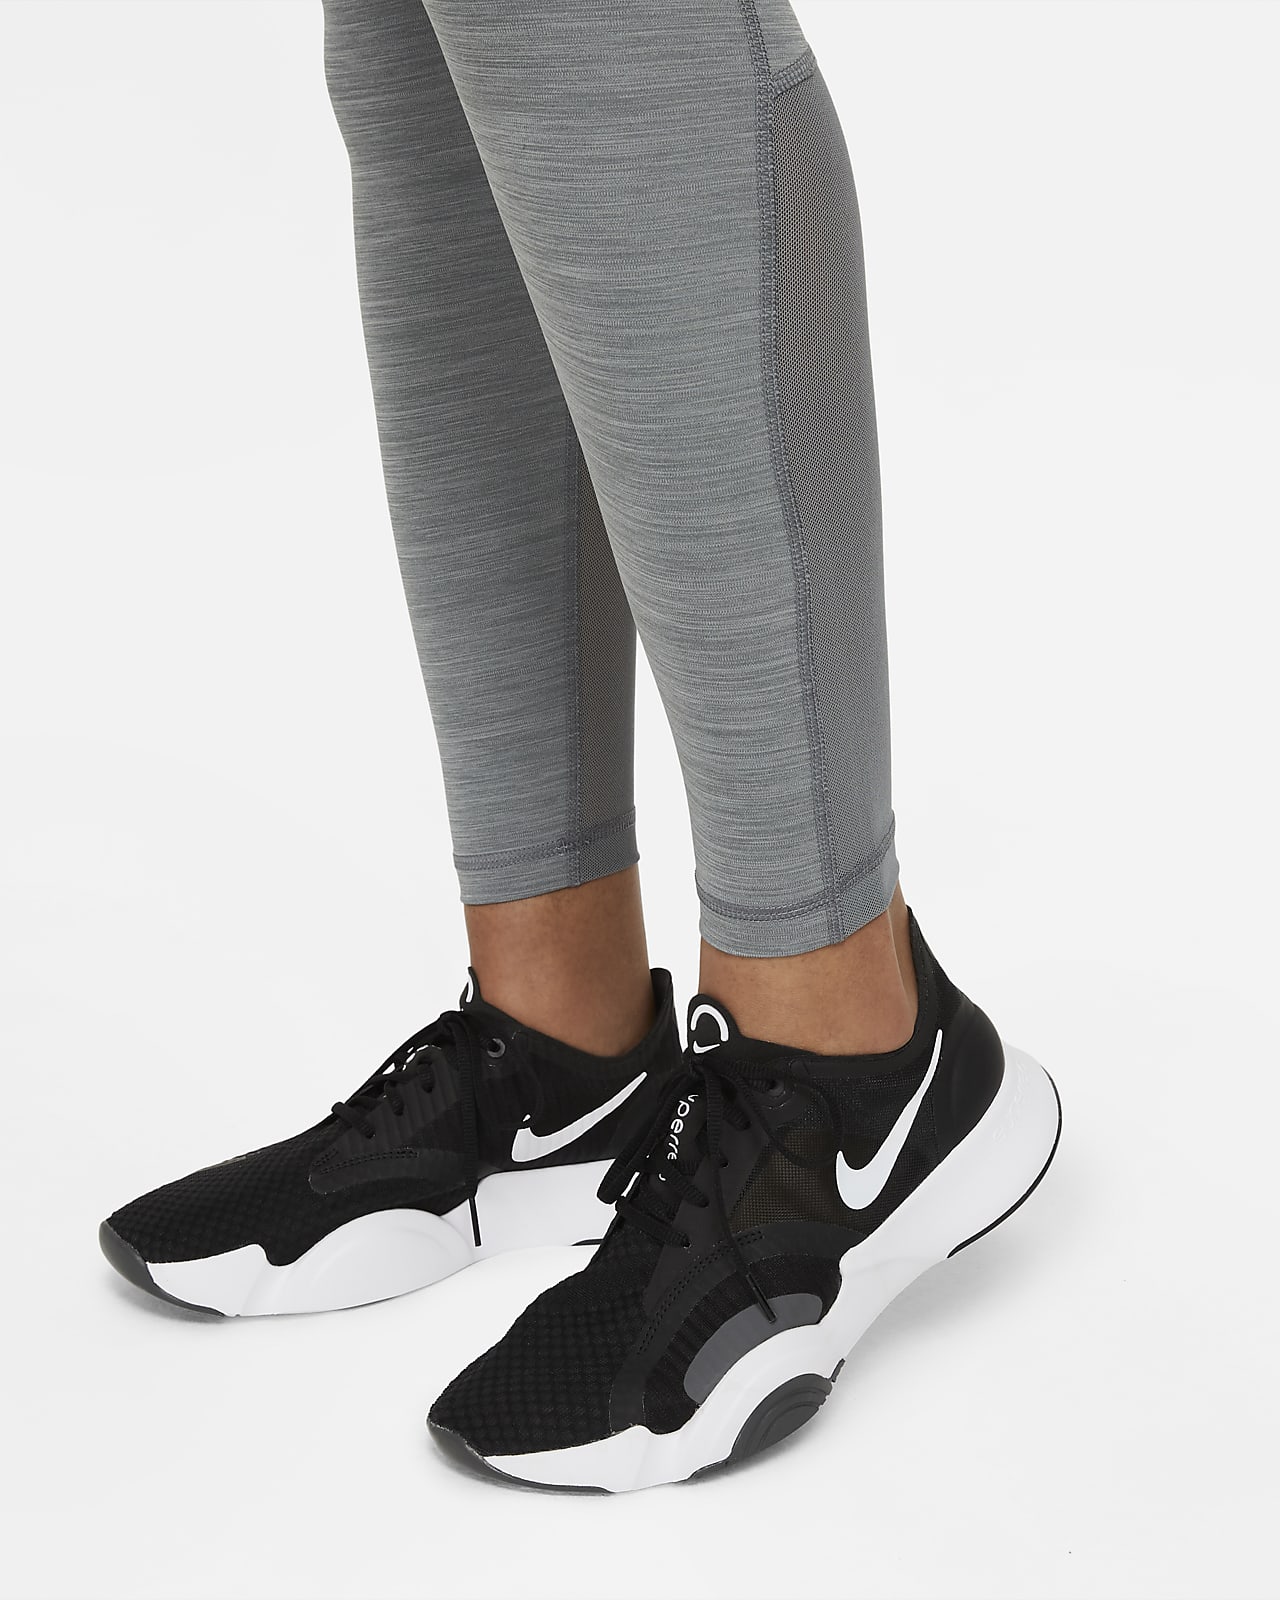 Nike, Pants & Jumpsuits, Nike Pro Leggings